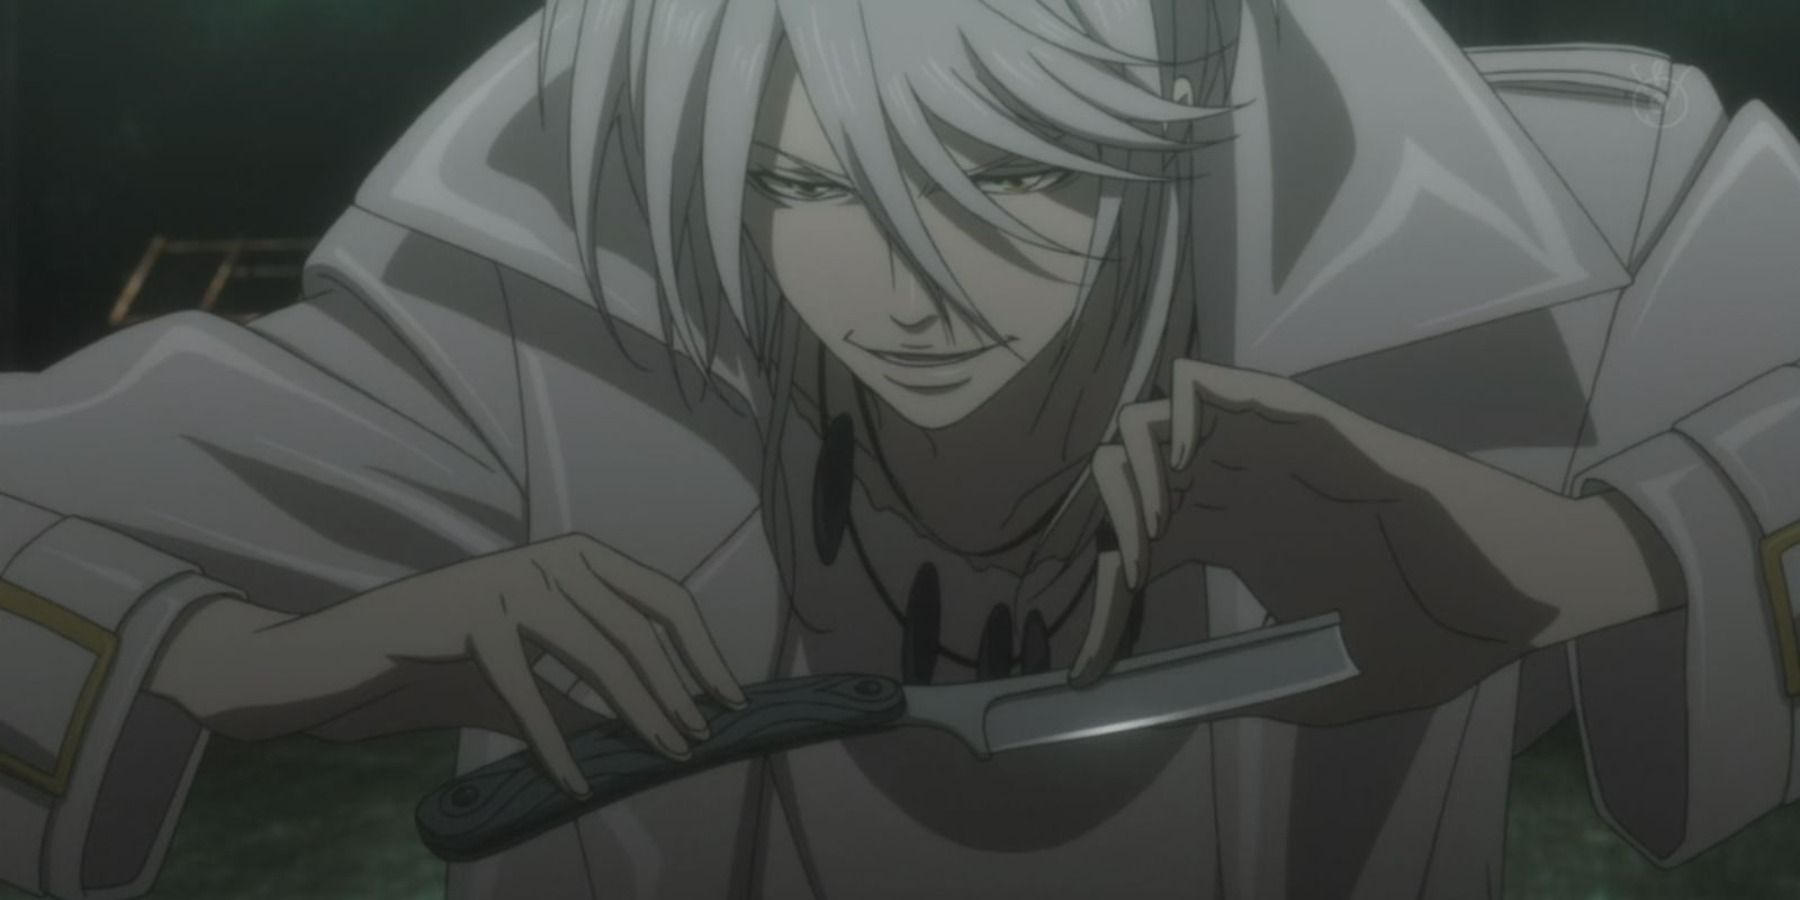 makishima shogo holding a knife